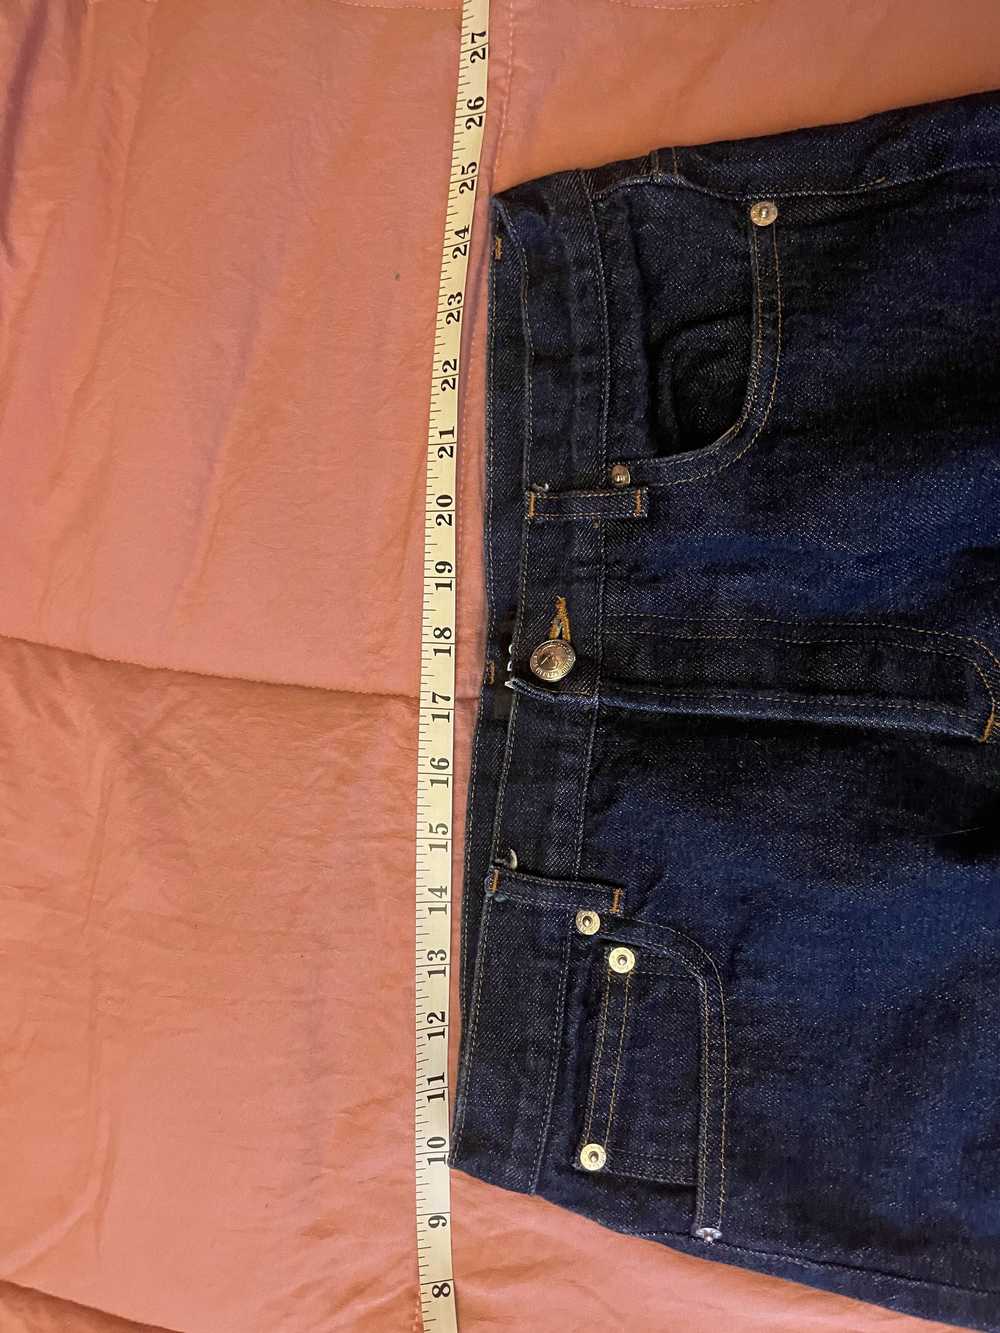 A.P.C. Petite Standard Jeans - image 2